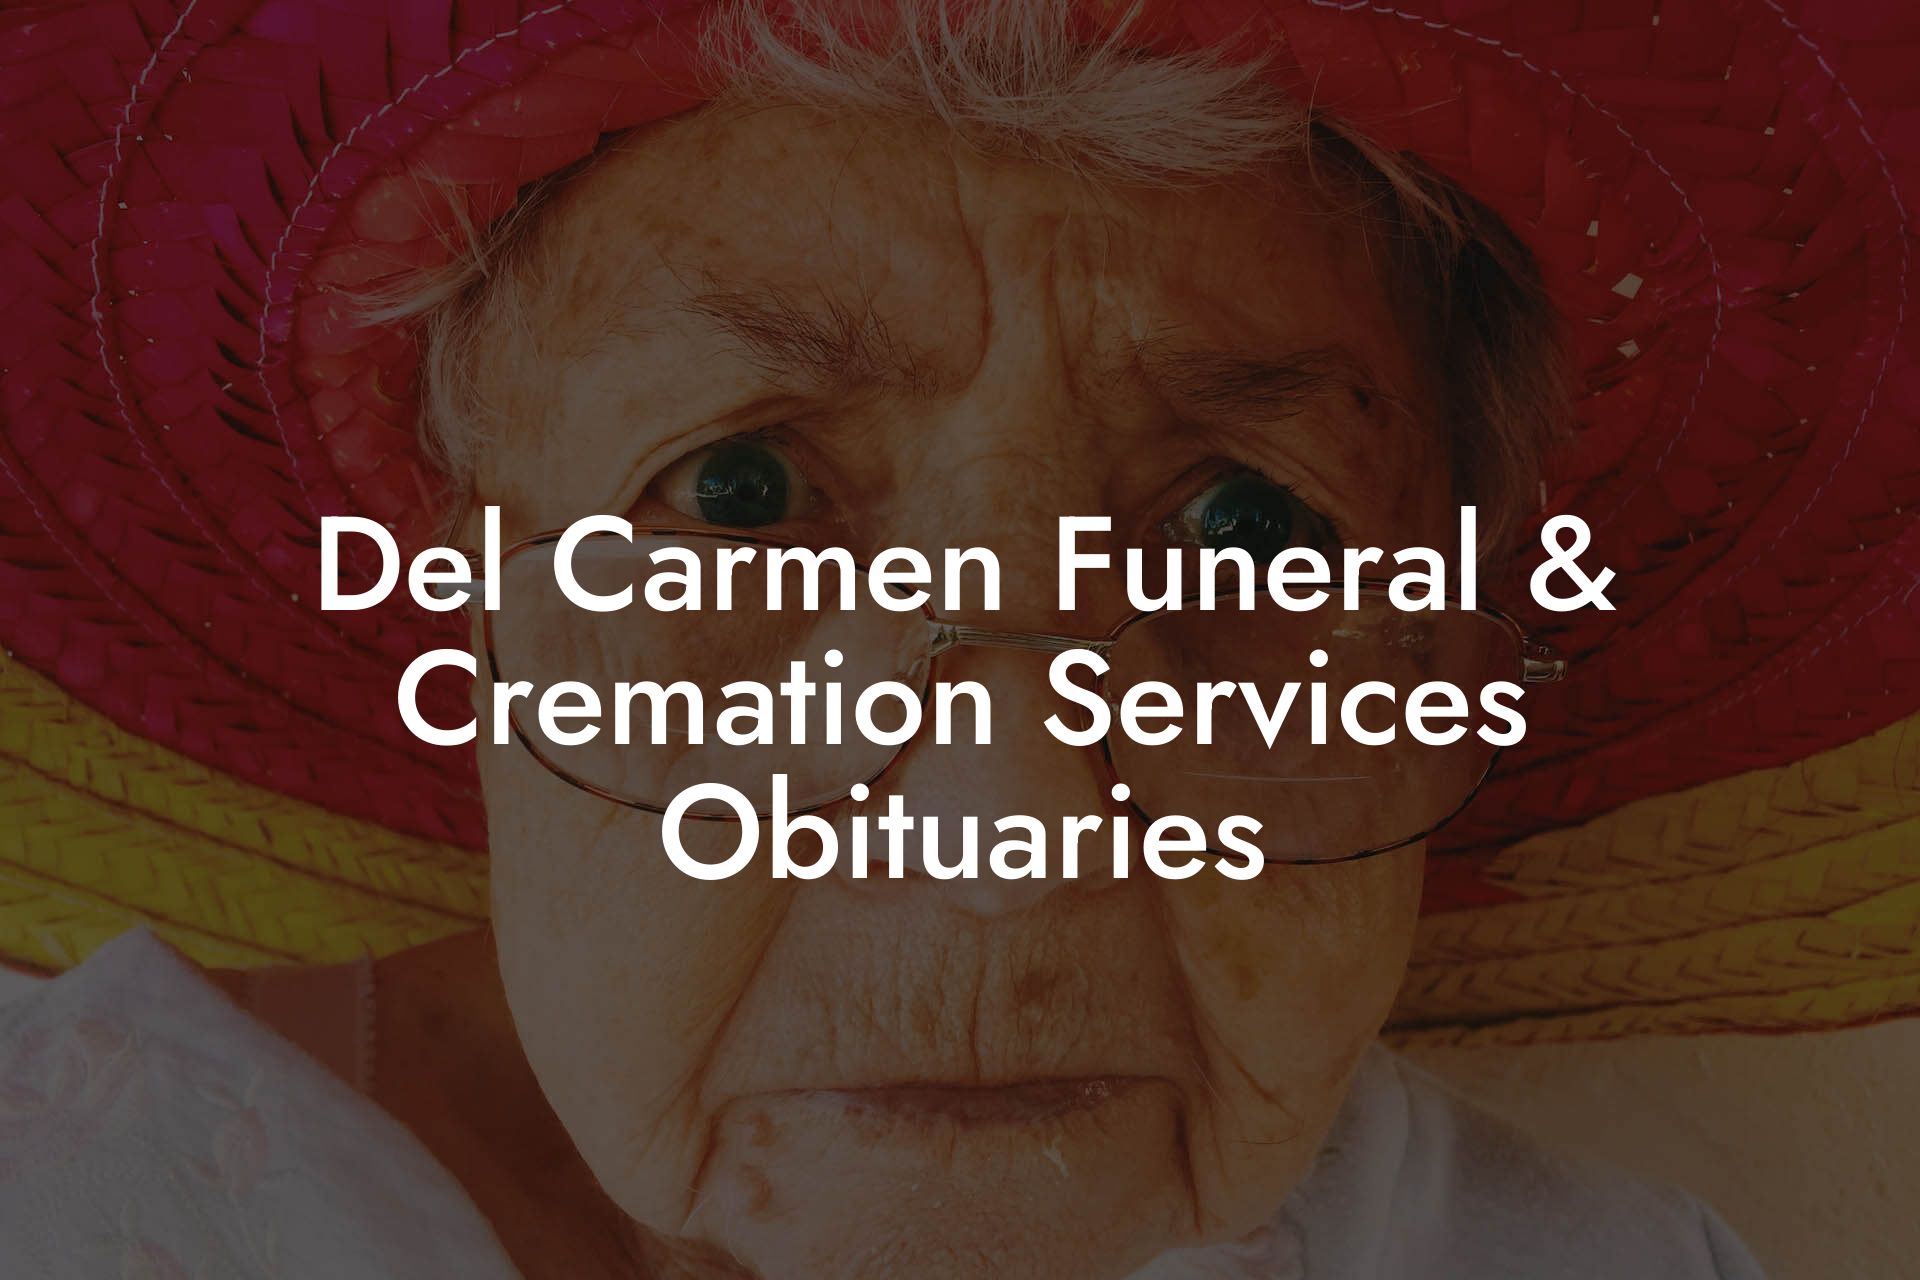 Del Carmen Funeral & Cremation Services Obituaries